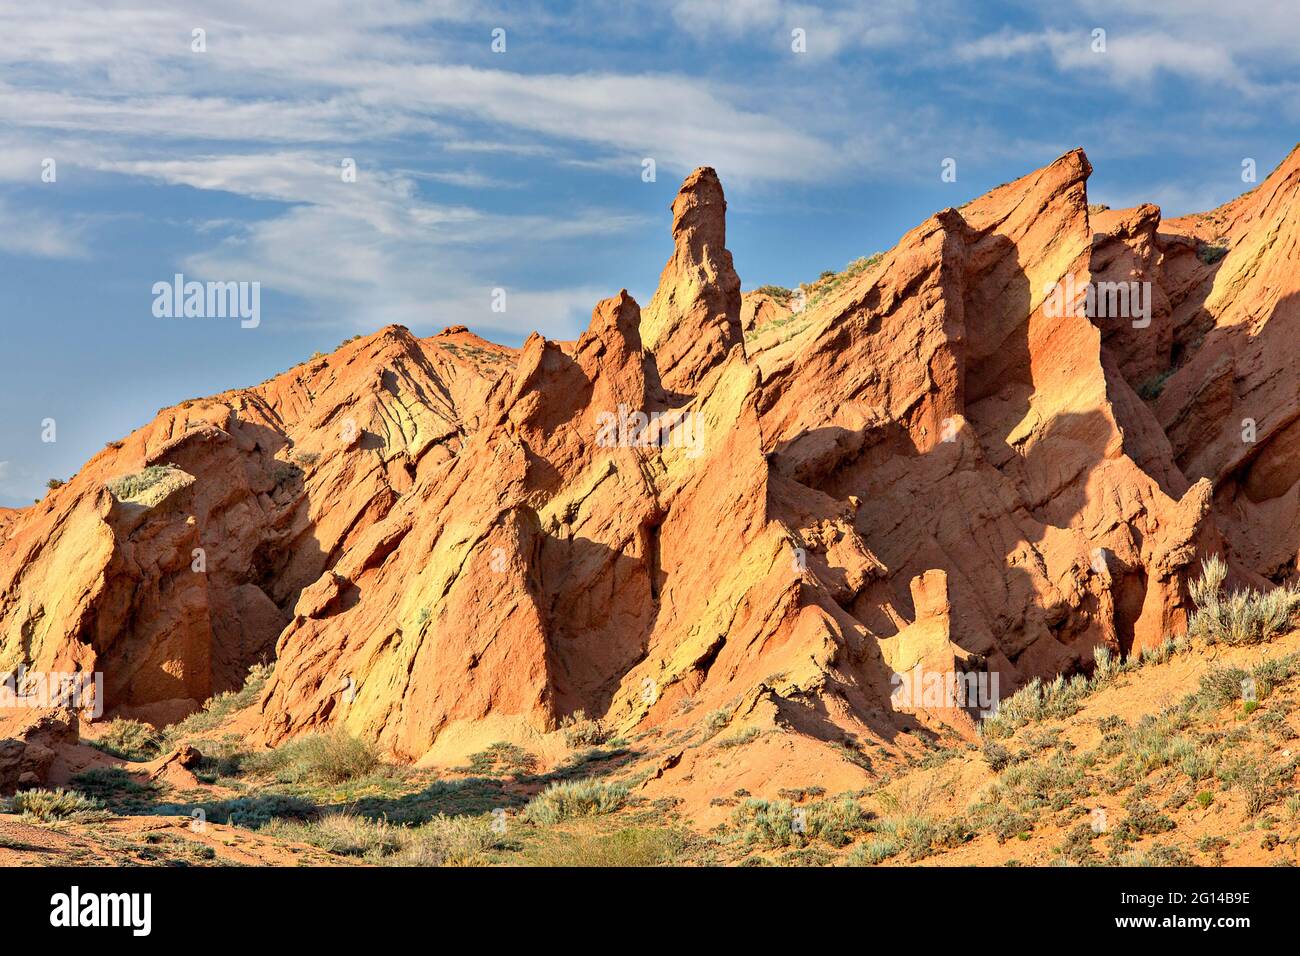 Formations de roches rouges connues sous le nom de Fairy Tale Castle, à Kaji Say, au Kirghizistan Banque D'Images